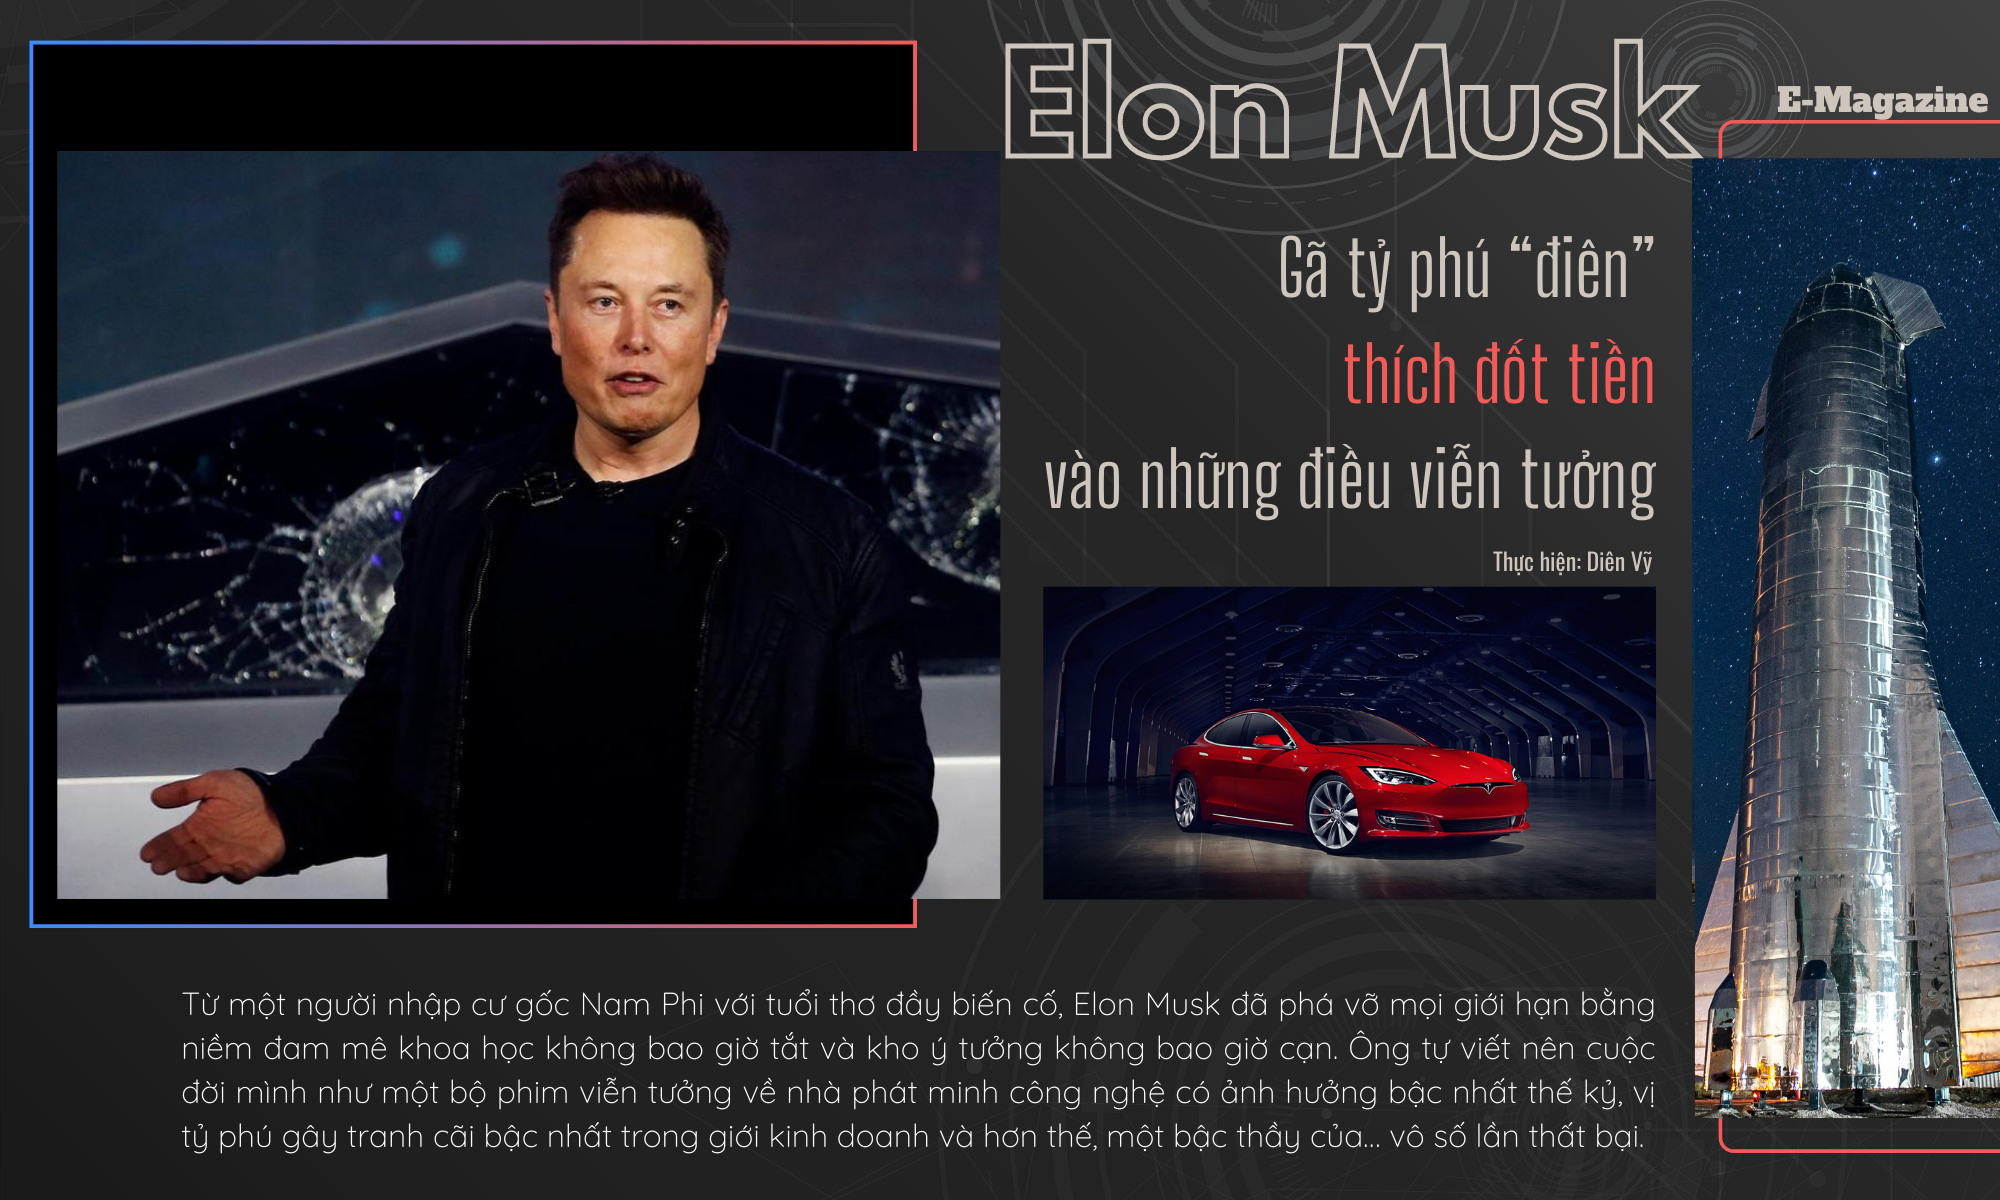 Elon Musk: Gã tỷ phú điên thích đốt tiền vào những điều viễn tưởng - 1